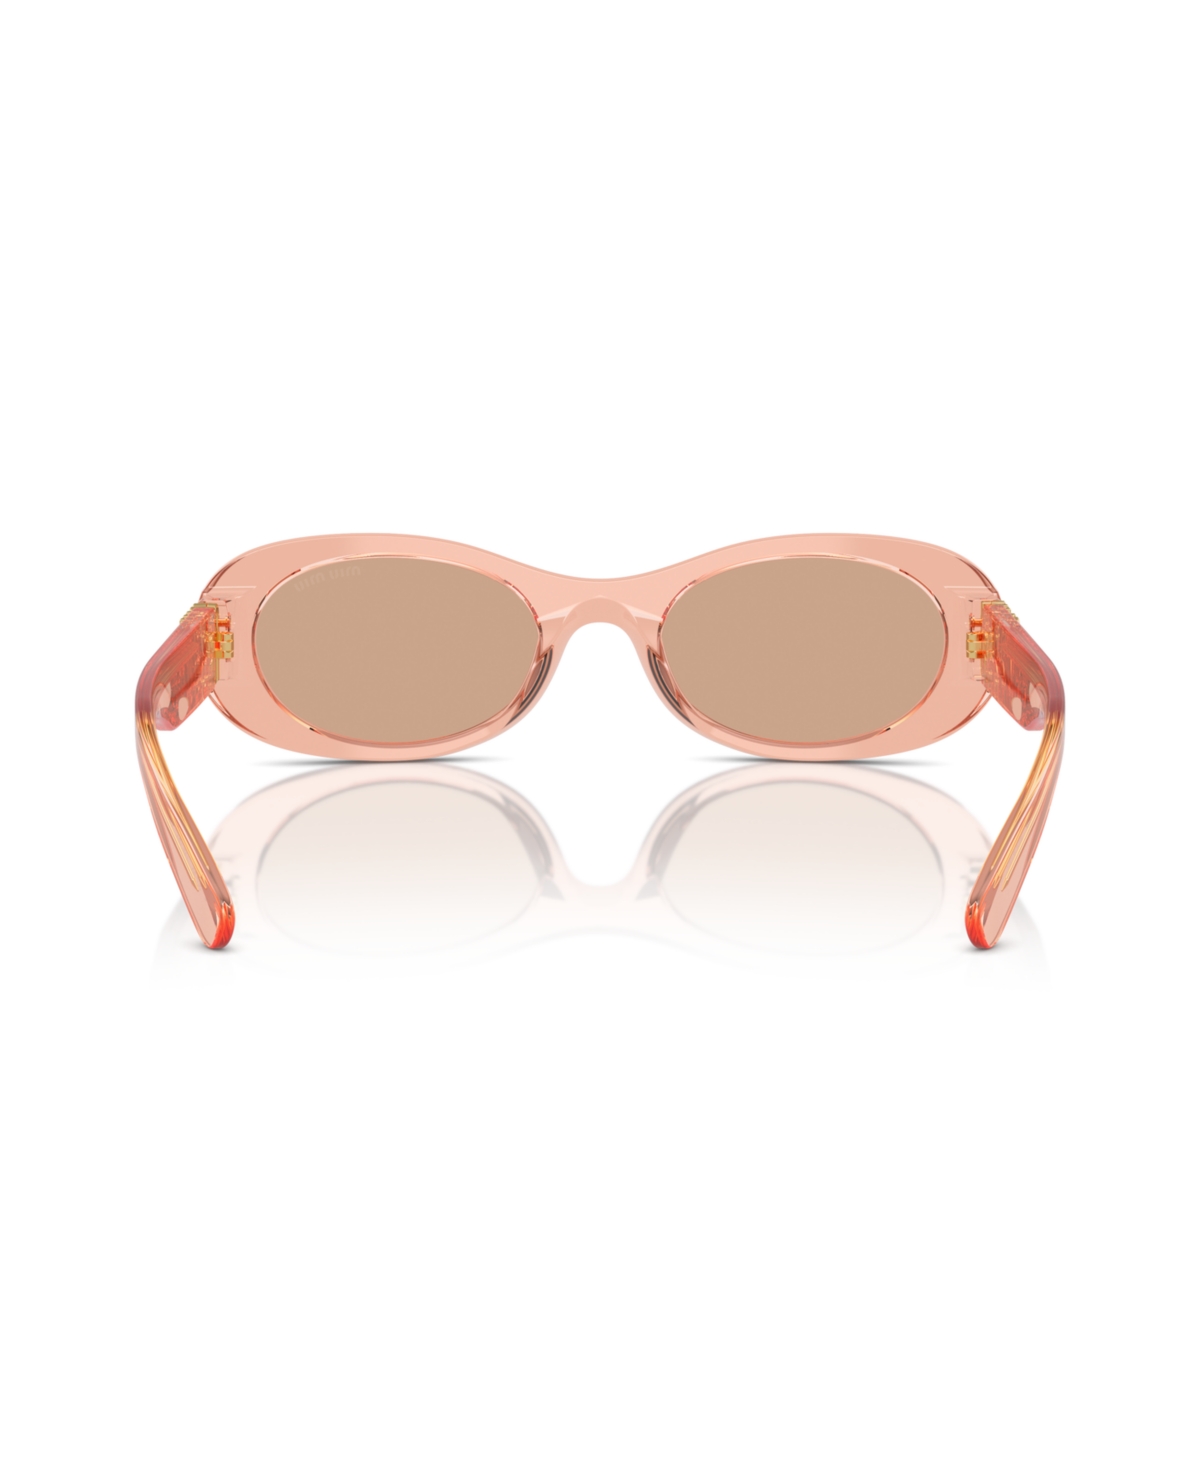 Shop Miu Miu Women's Sunglasses, Mu 06zs In Noisette Transparent